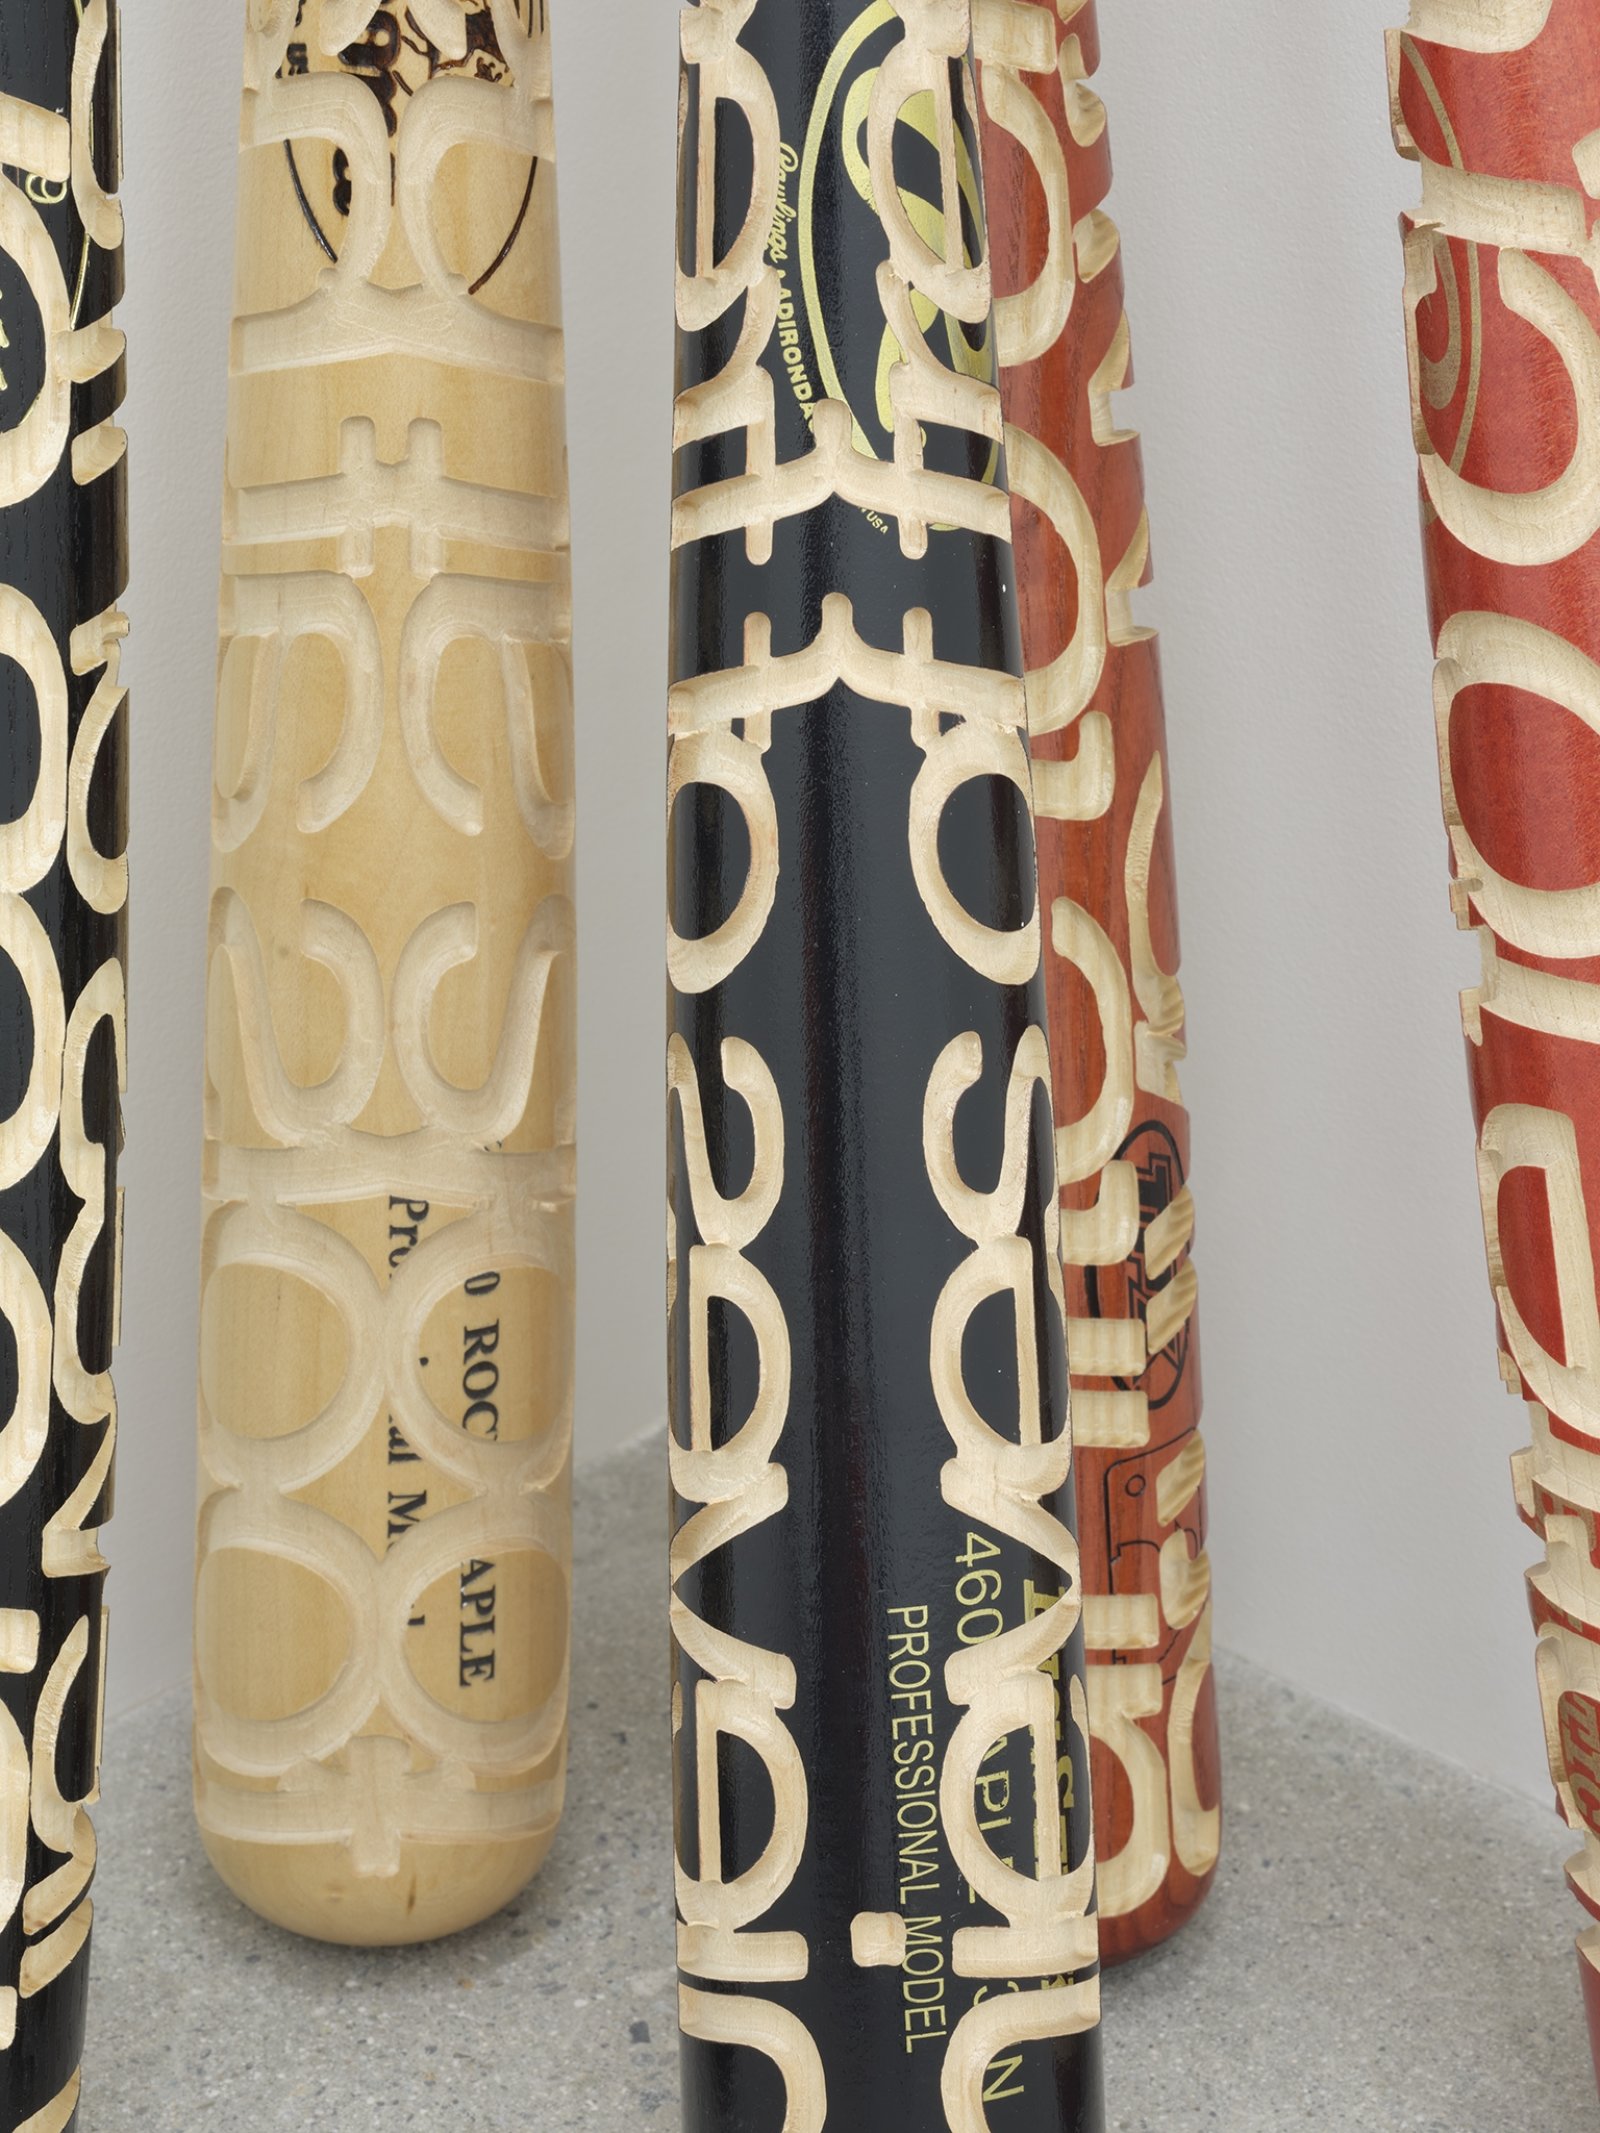 Brian Jungen, Talking Sticks (detail), 2005, carved baseball bats, each 33 x 3 x 3 in. (83 x 8 x 8 cm)